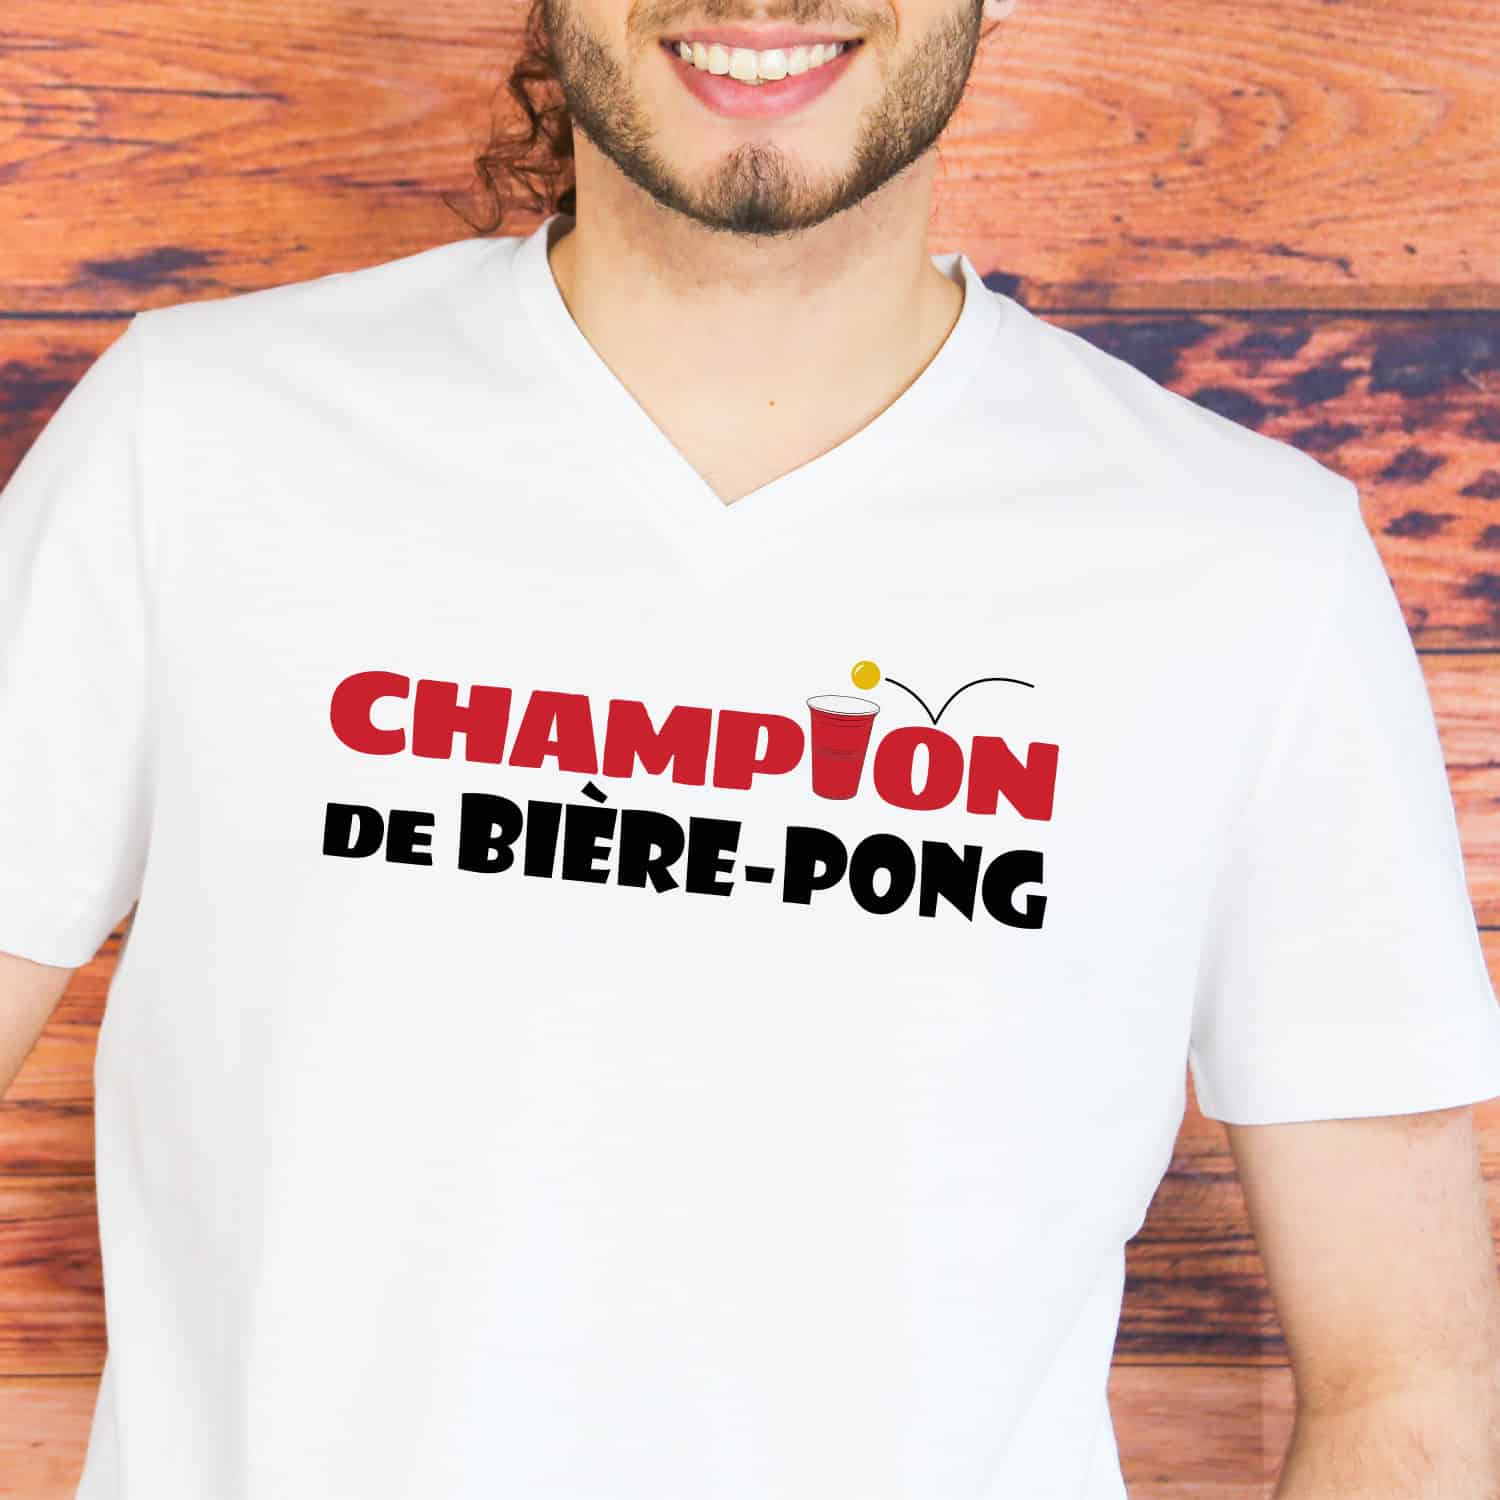 T-shirt Homme Champion de Biere pong